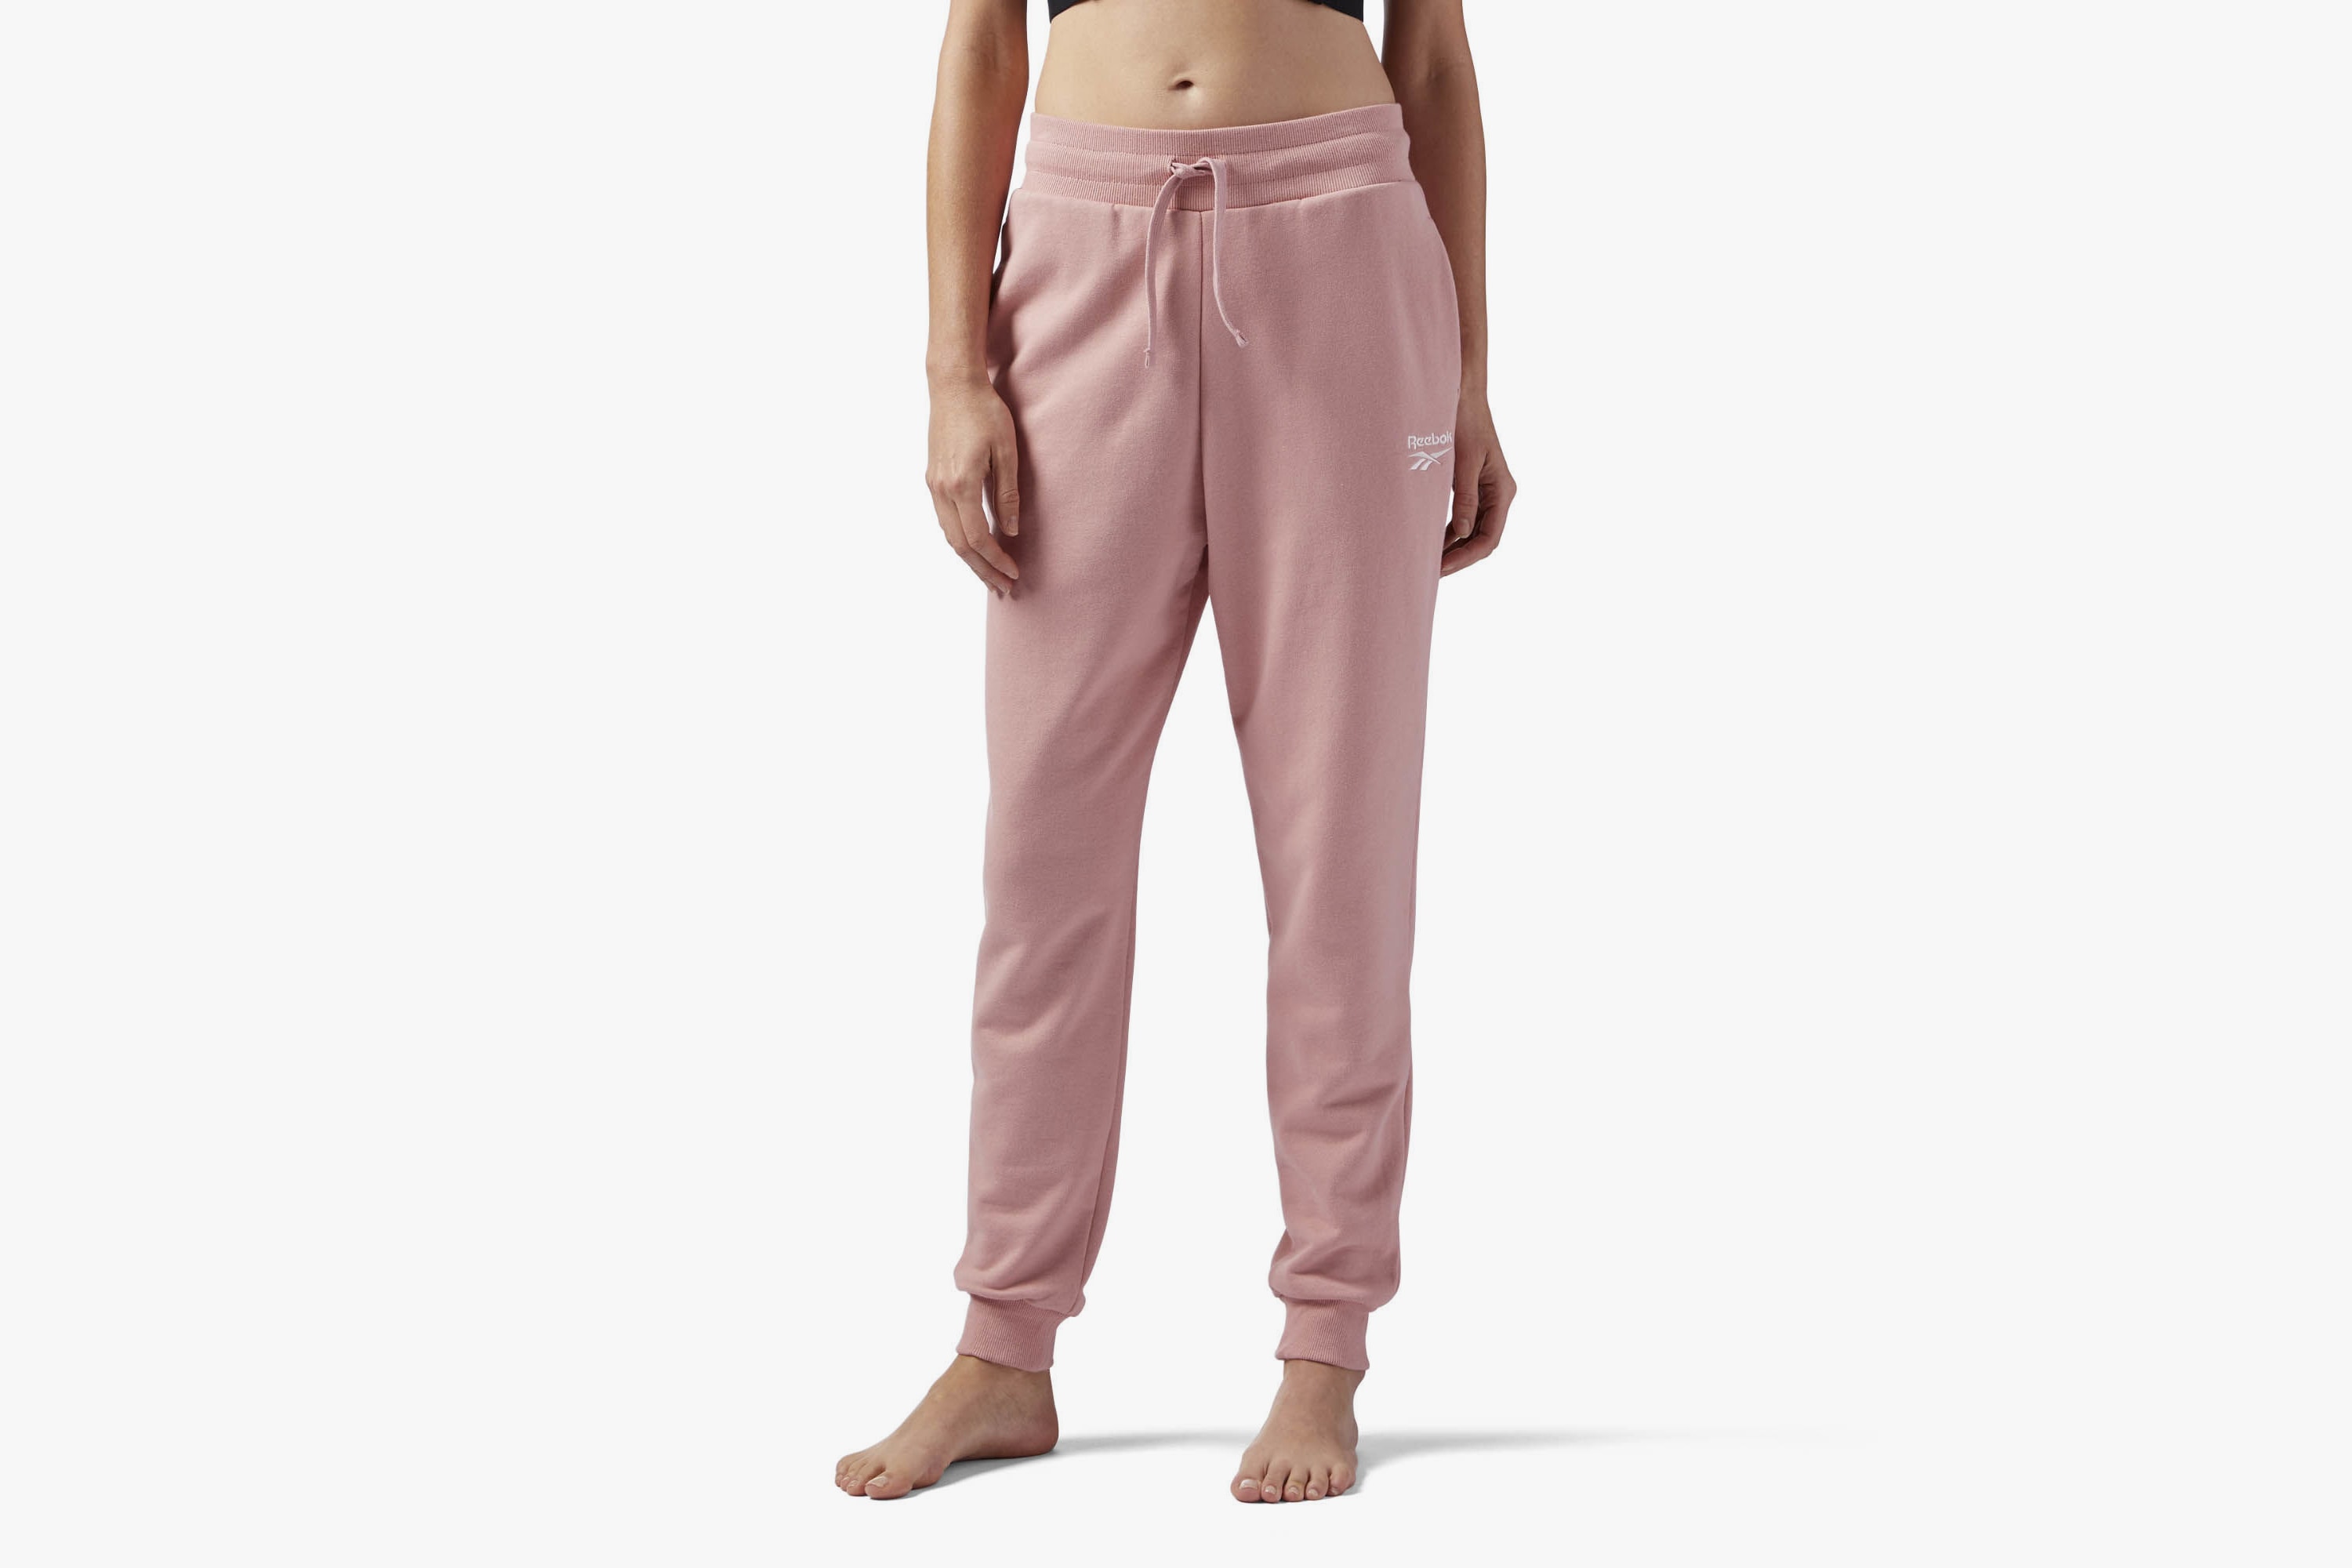 Reebok Pink French Terry Sweatpants Cozy Loungewear Trousers Joggers Rose Pastel Streetwear